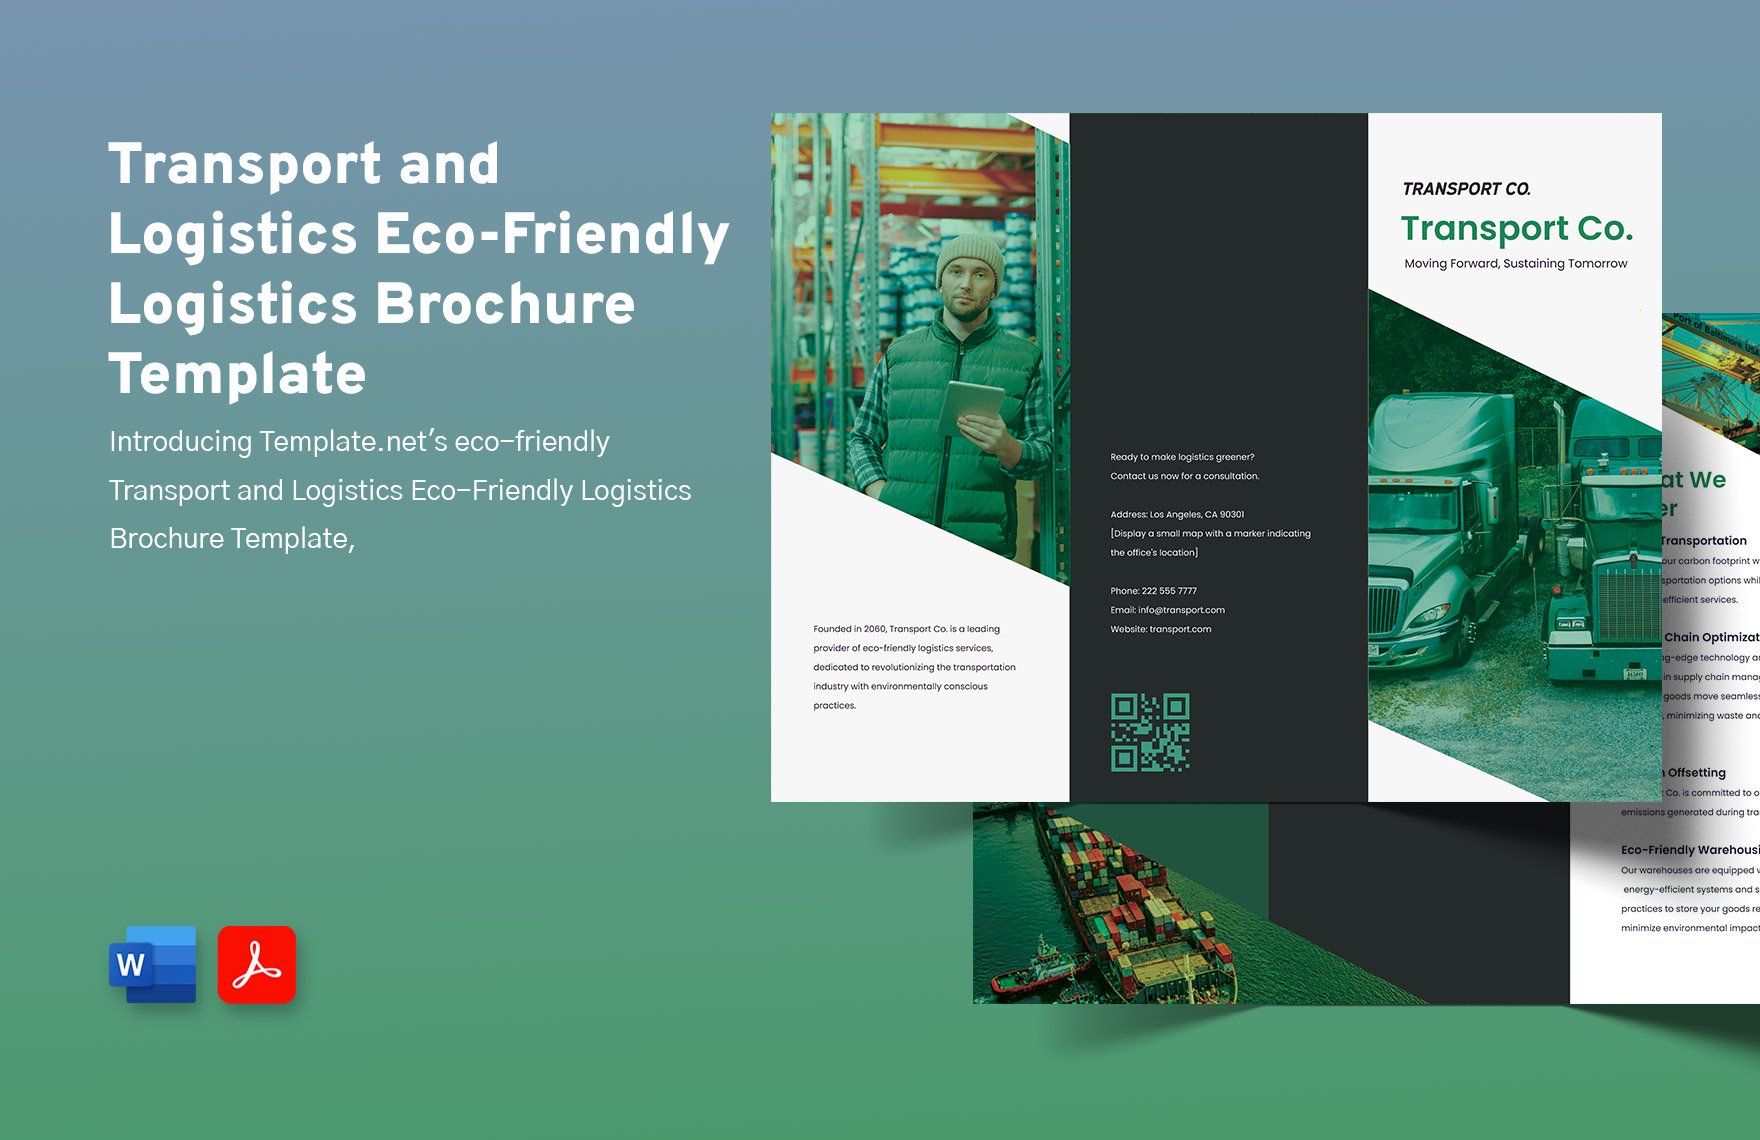 Transport and Logistics Eco-Friendly Logistics Brochure Template